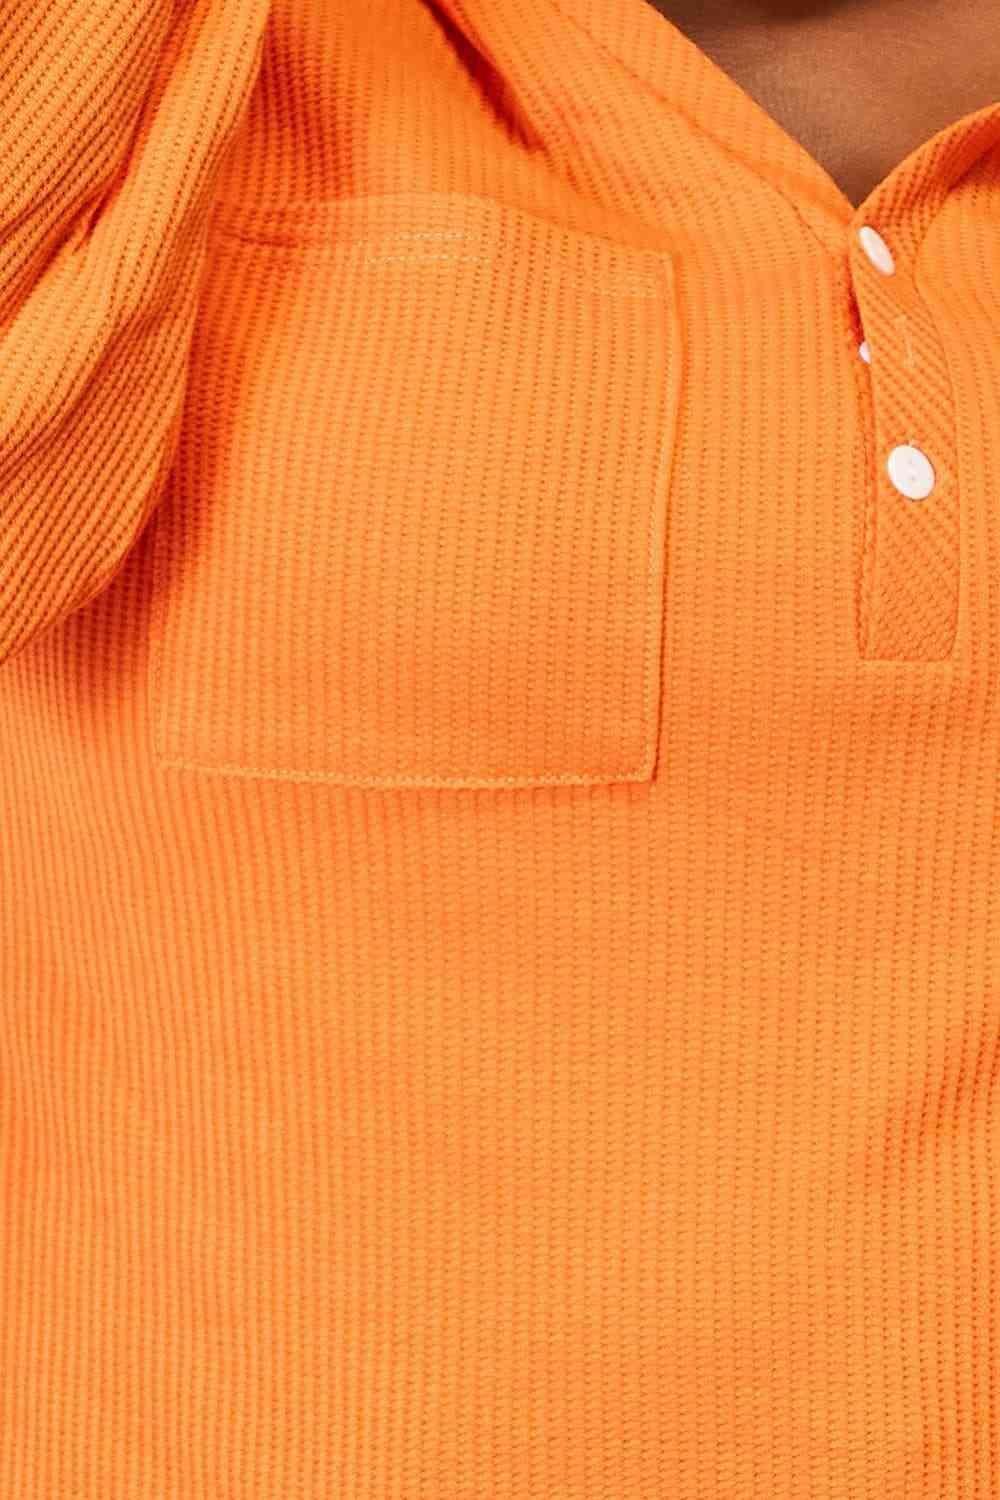 Bona Fide Fashion - Basic Bae Side Slit Buttoned Waffle Knit Hoodie - Bona Fide Fashion